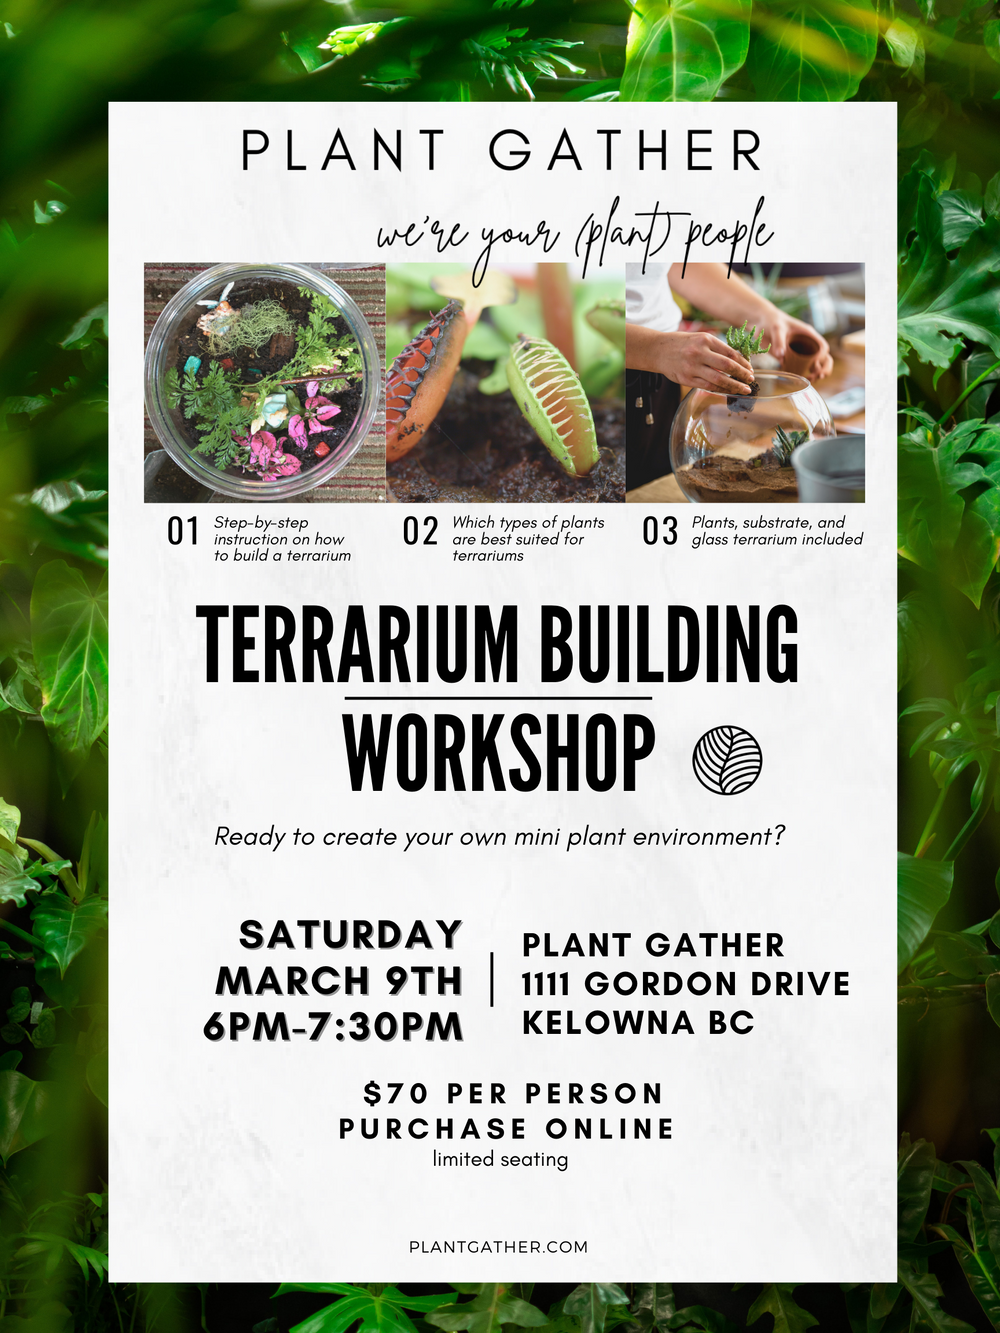 Terrarium Building Workshop - March 9th @ 6PM